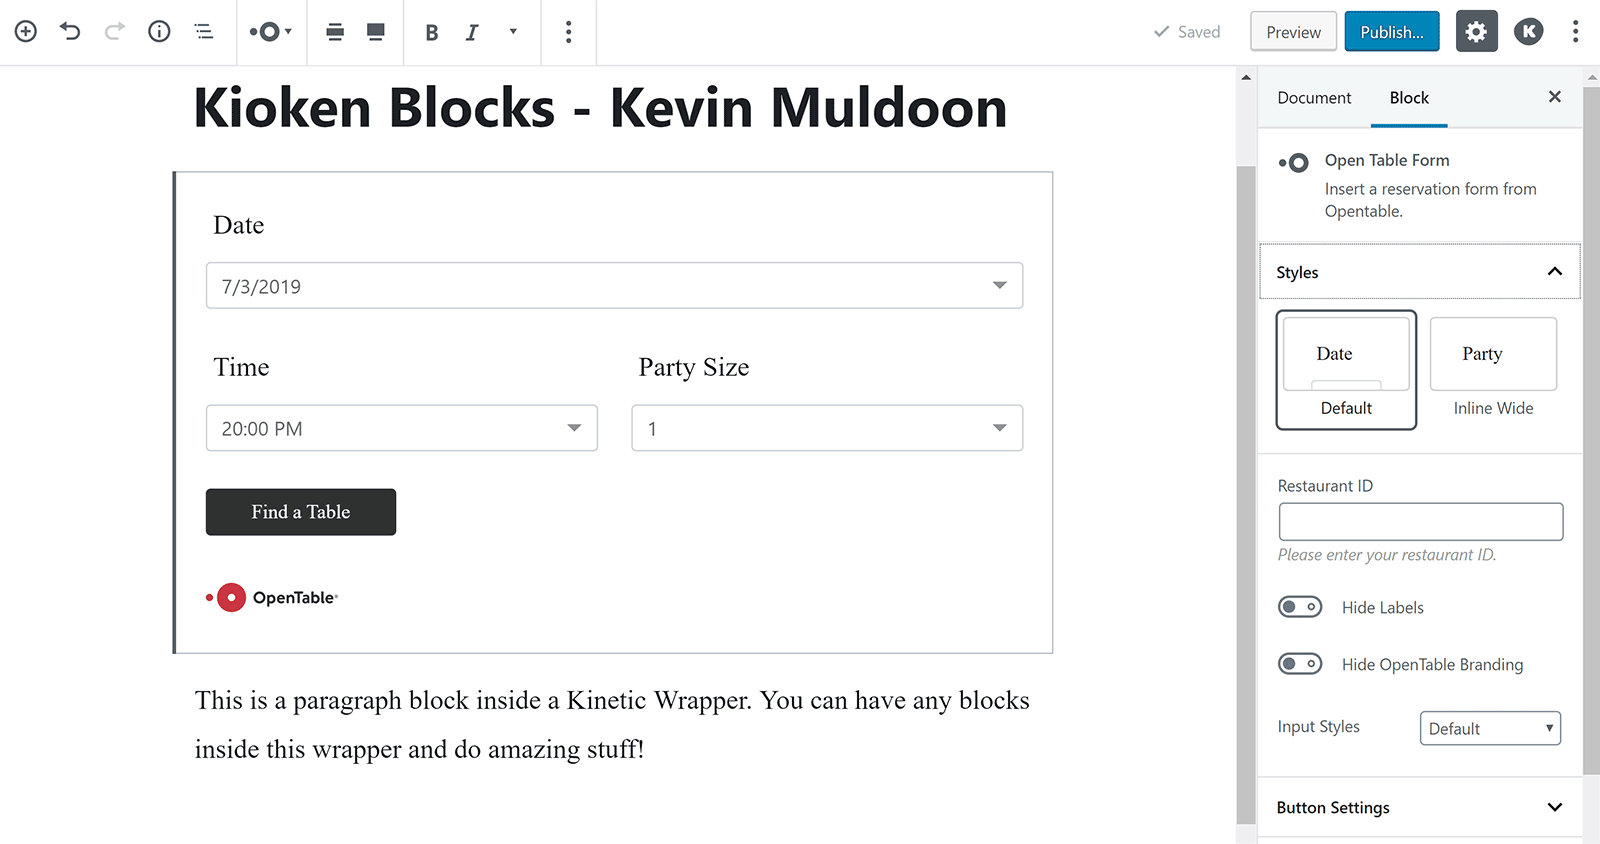 Kioken Blocks